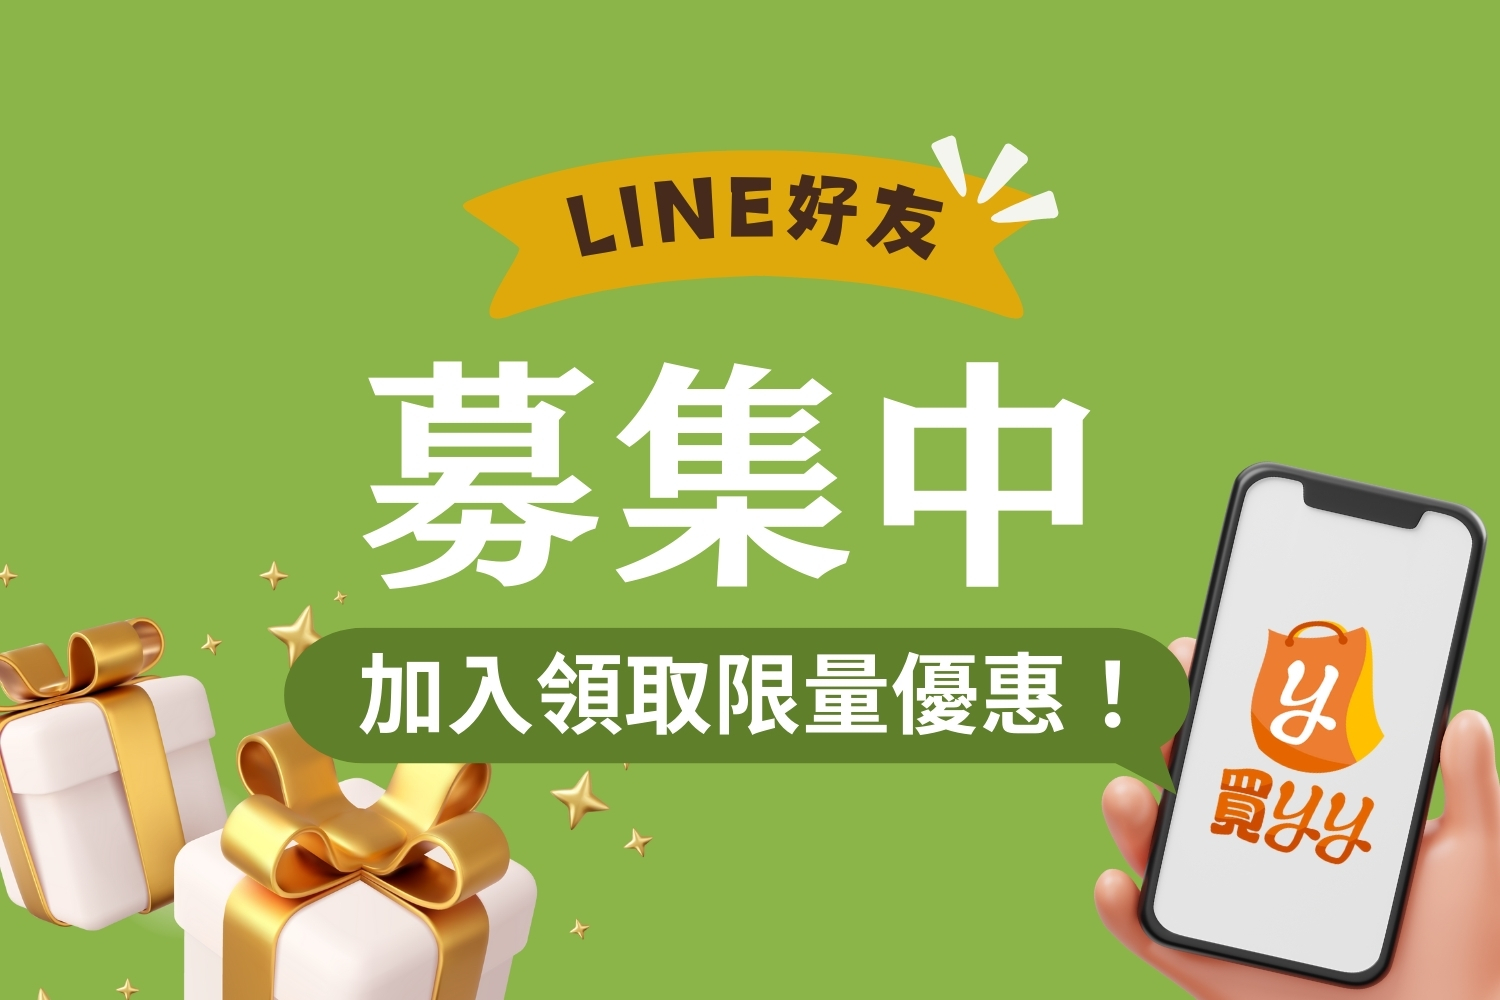 歡慶！買yy團購網正式上線，LINE官方帳號獨家優惠等您來享！